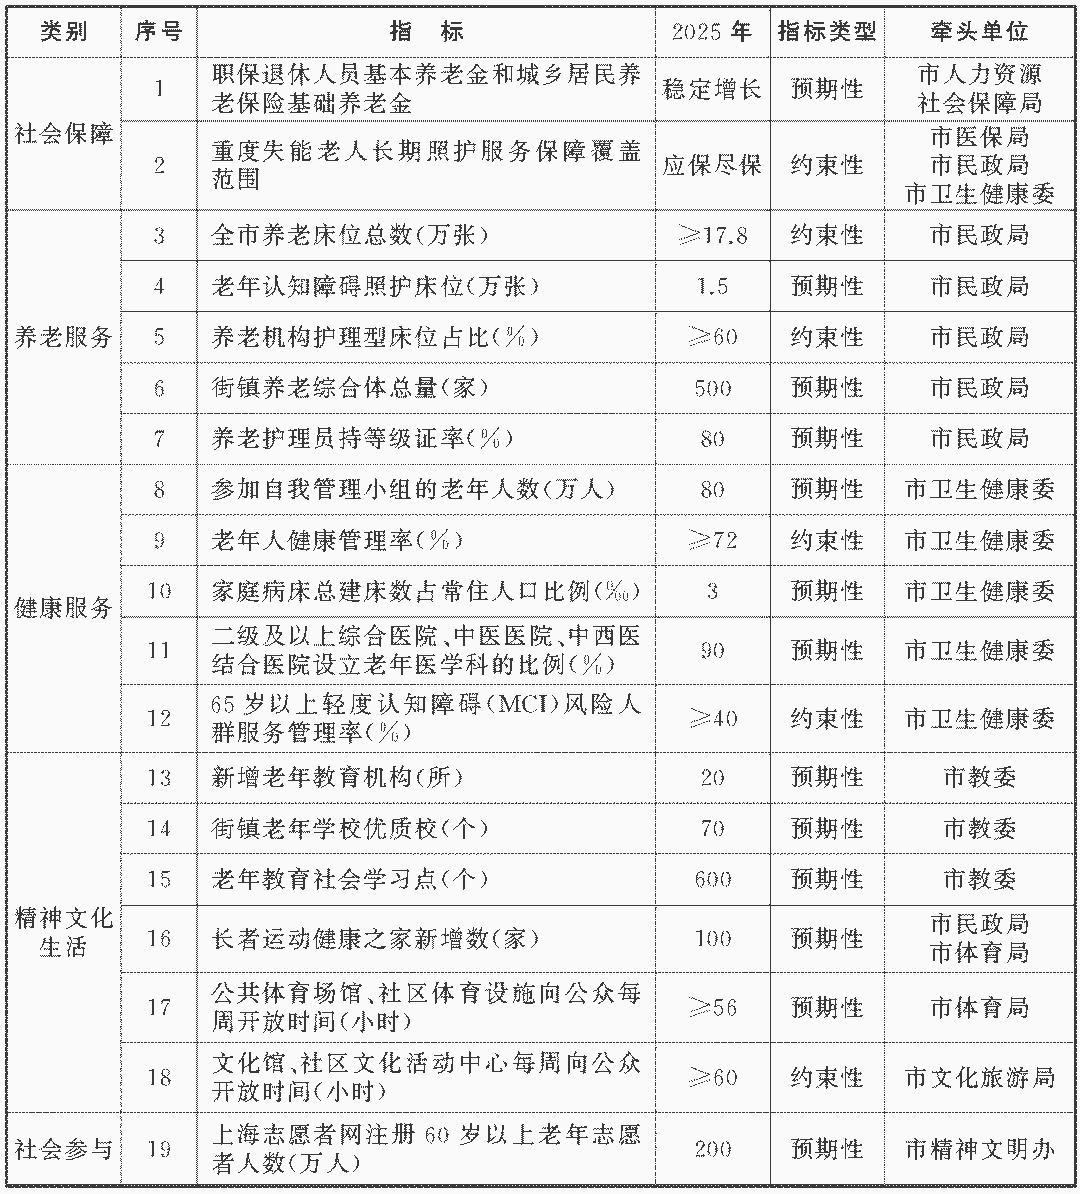 上海市政府发布《上海市老龄事业发展“十四五”规划》(图2)